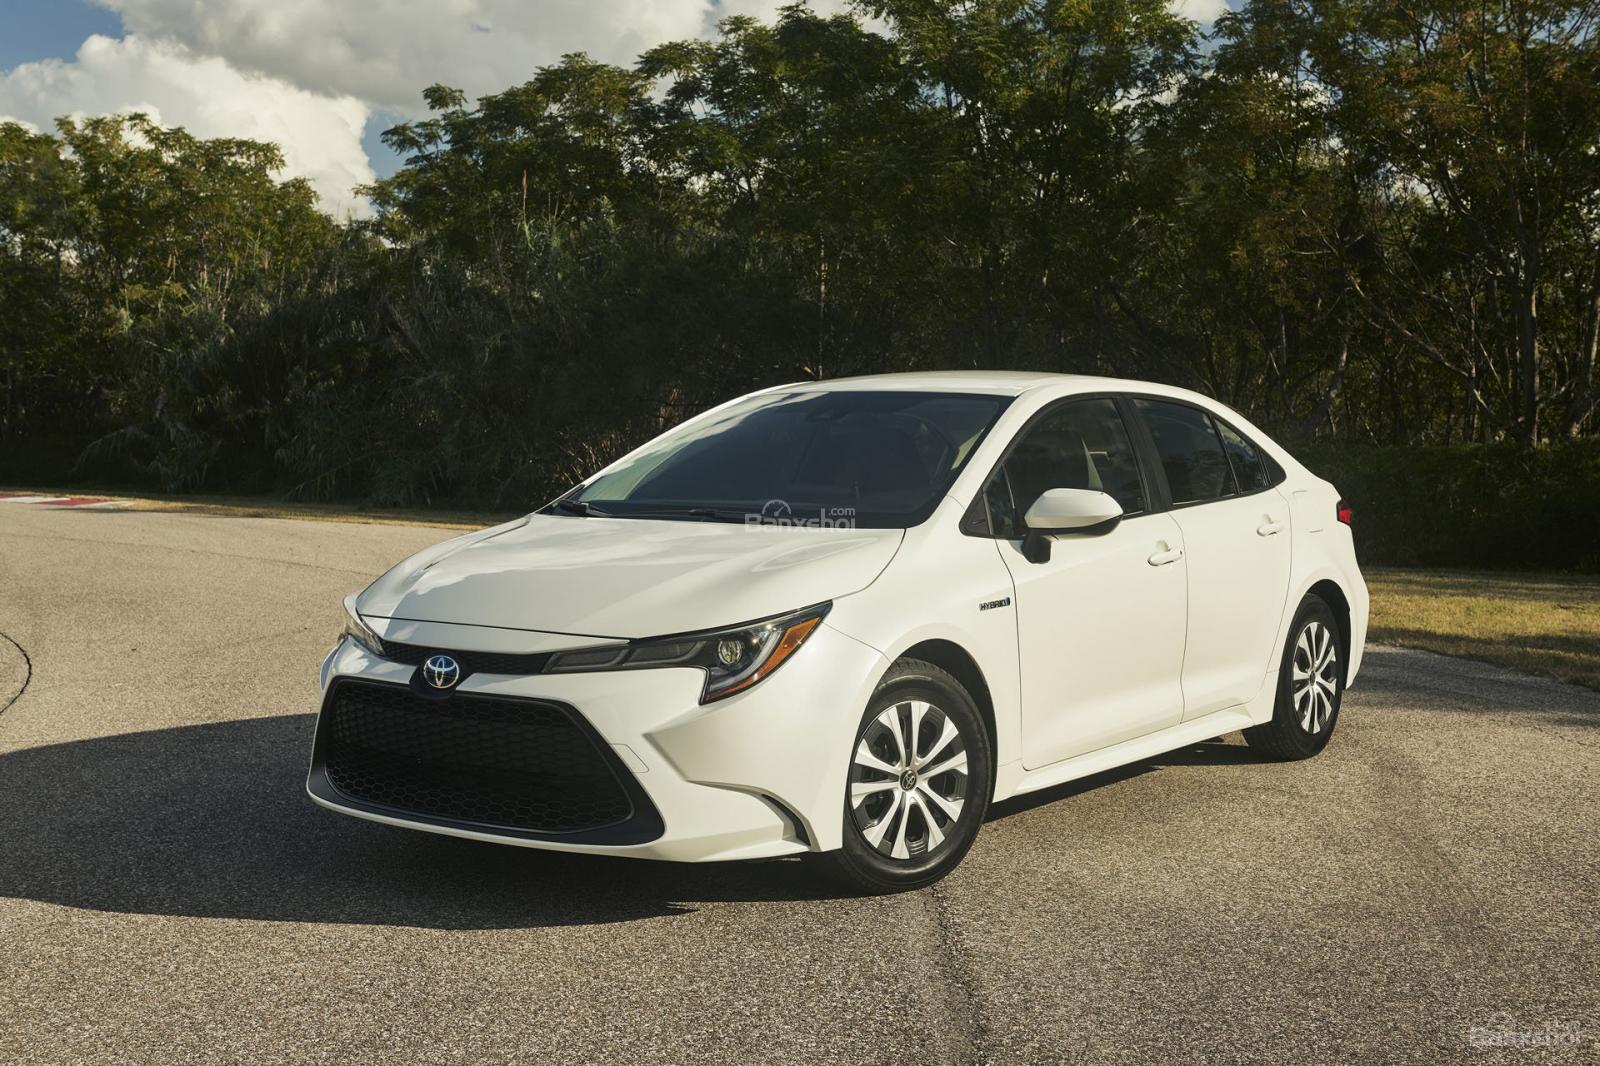 [L.A 2018] Sedan Toyota Corolla 2020 công bố thông số - 1